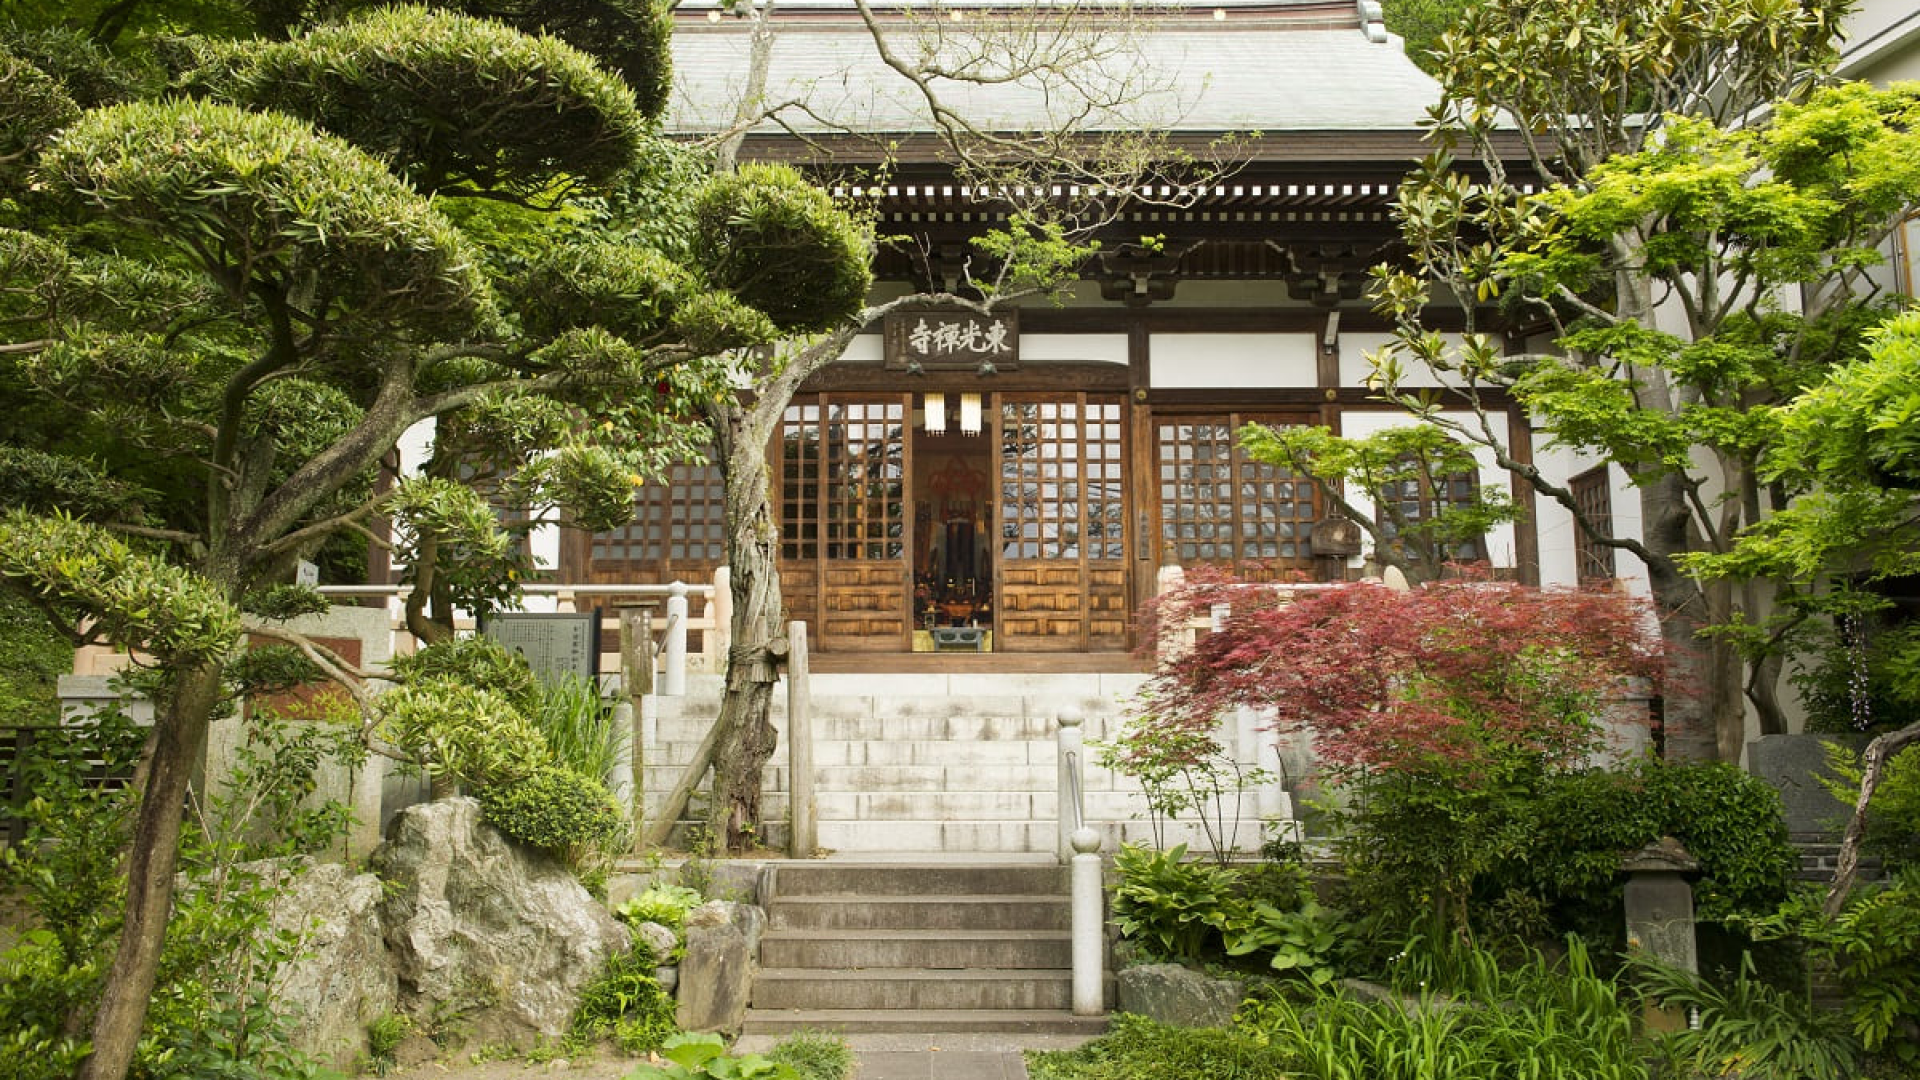 Hakusan Tokozen Temple (Main temple of Kenchoji school of Rinzai sect)